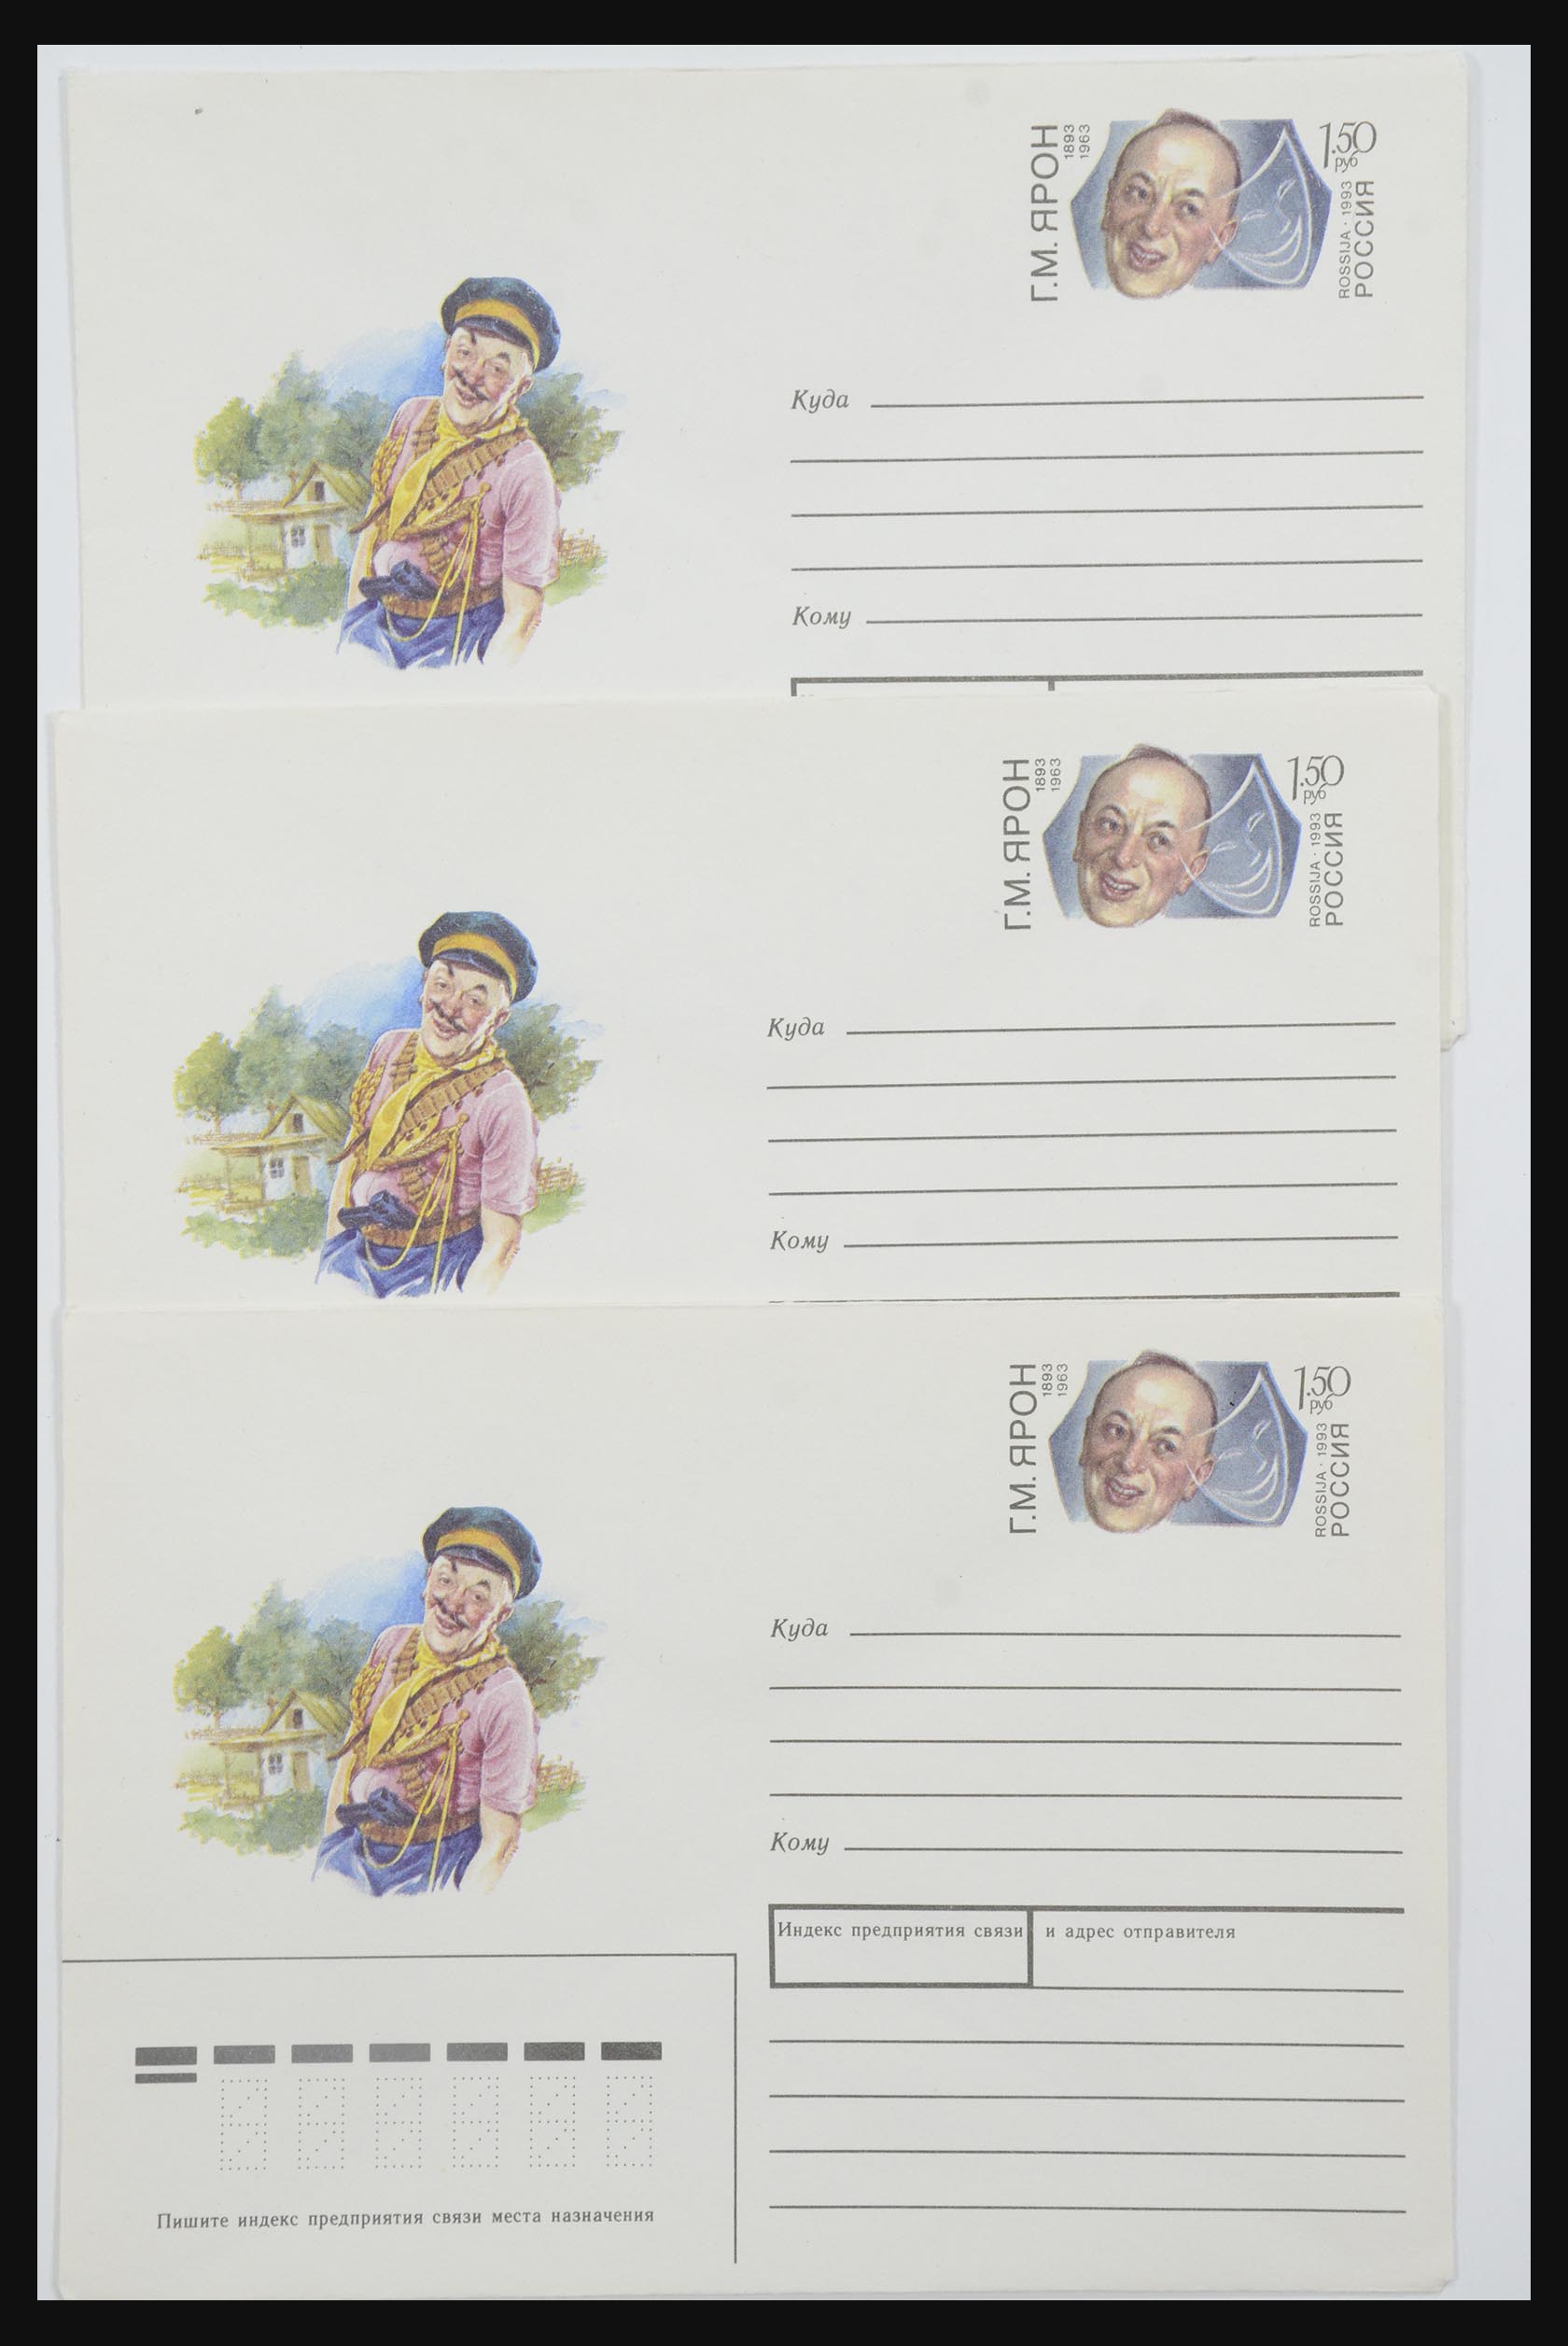 31605 1235 - 31605 Rusland postwaardestukken jaren 50-60.